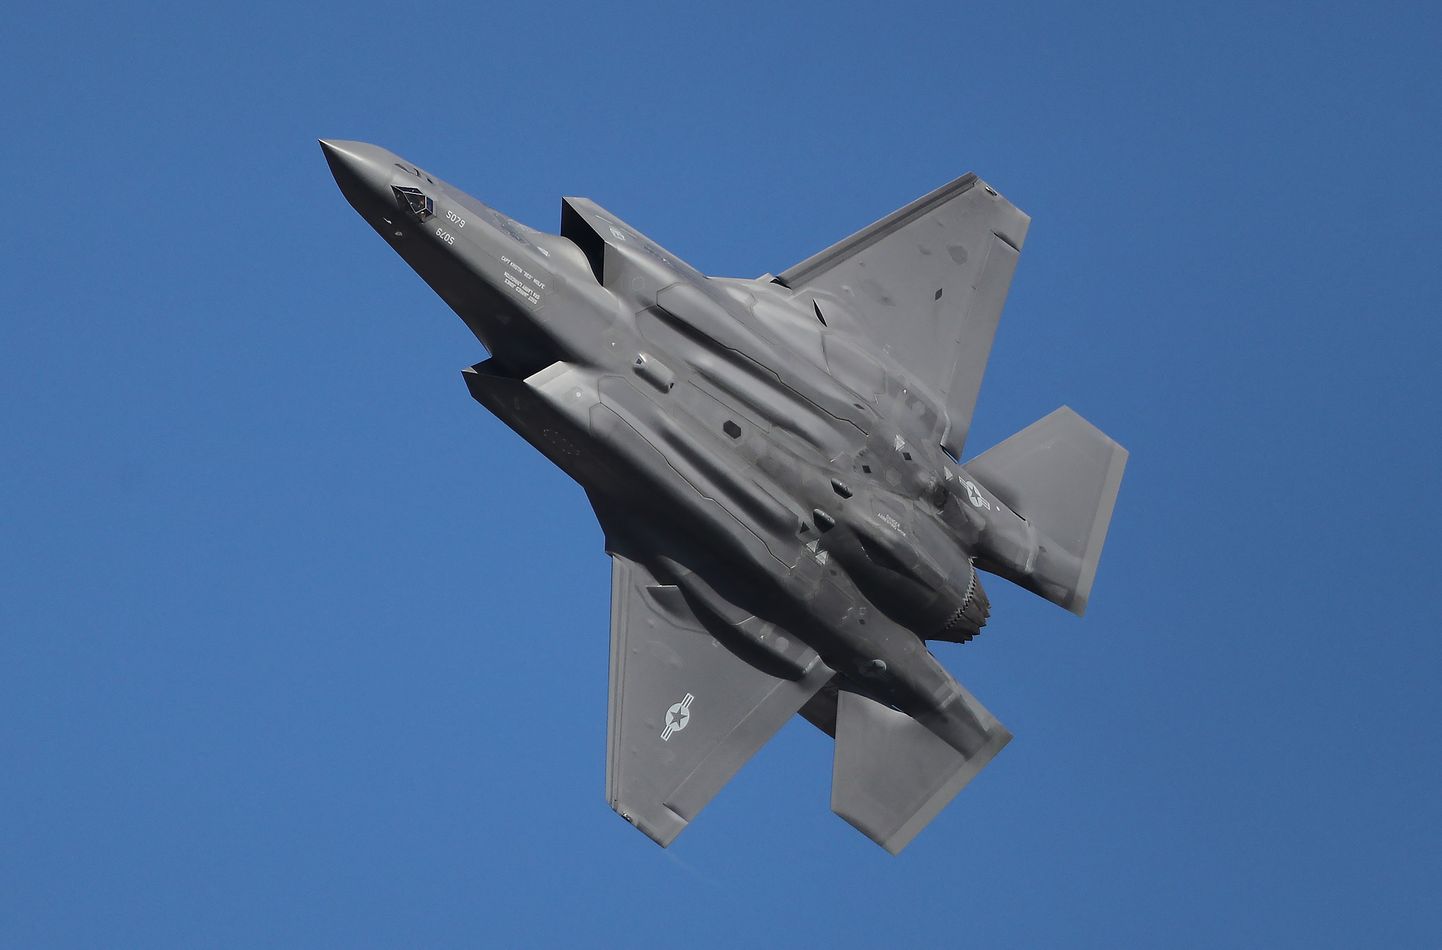 USA õhujõudude Lockheed Martin hävituslennuk F-35A. Pilt on illustreeriv